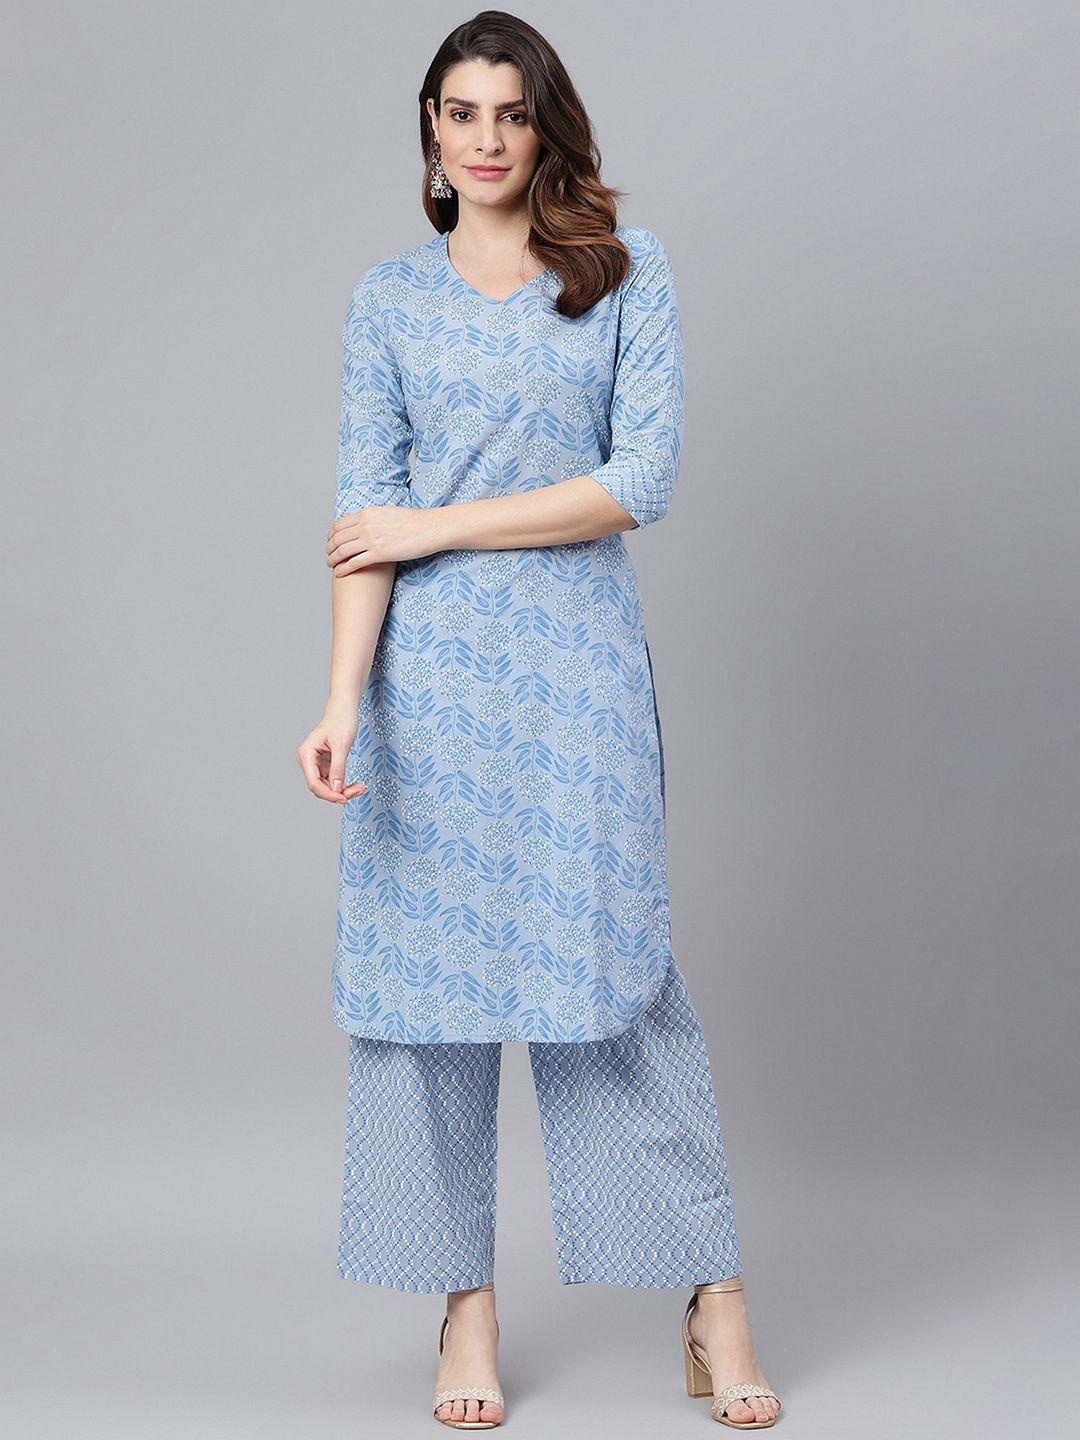 idalia-women-blue-ethnic-motifs-printed-pure-cotton-kurta-with-palazzos